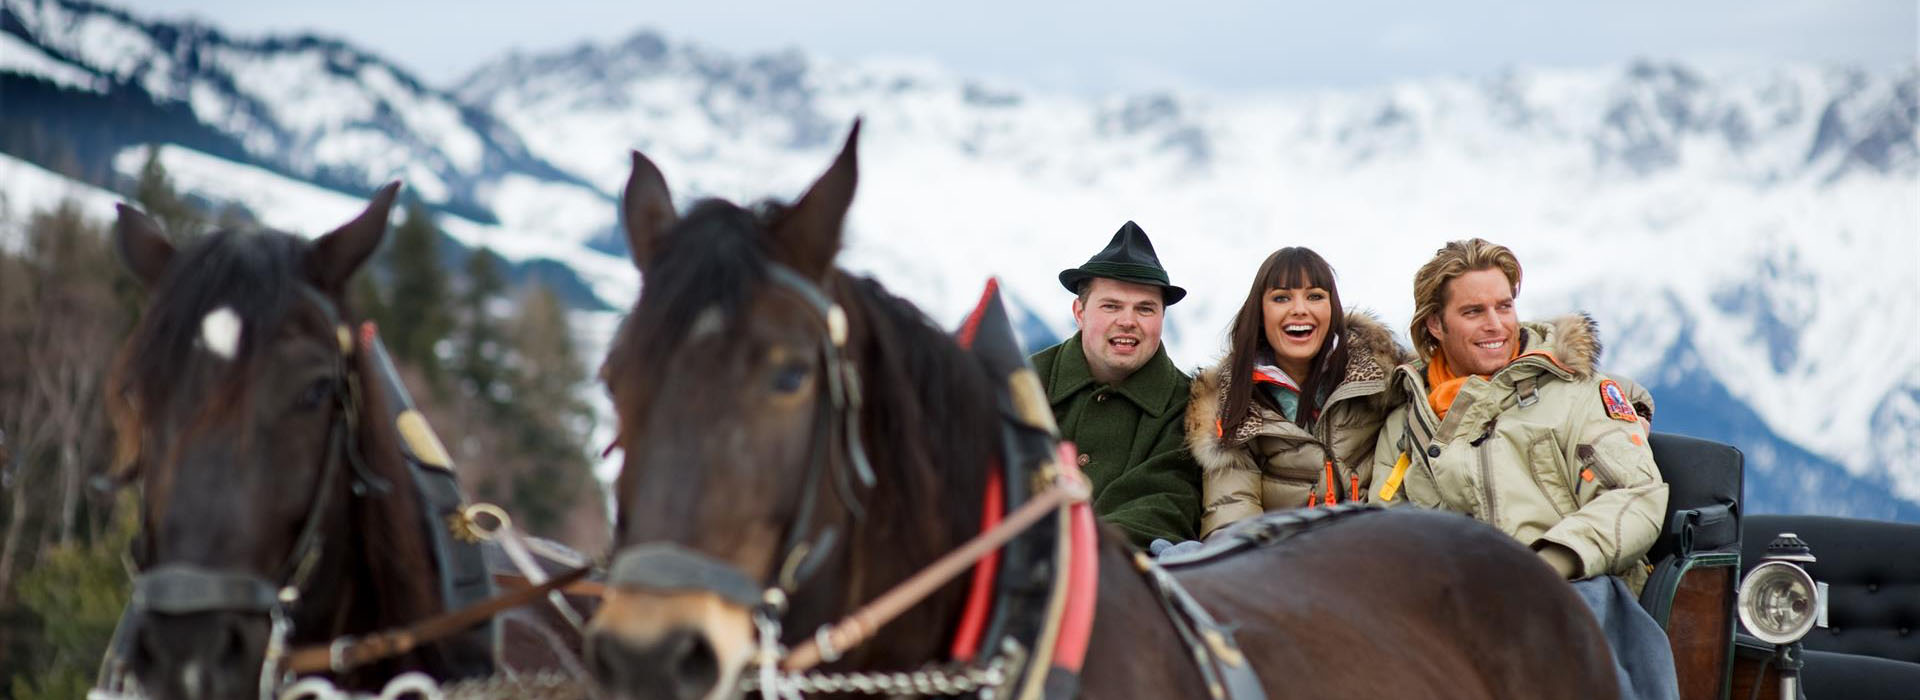 Horse-drawn sleigh rides